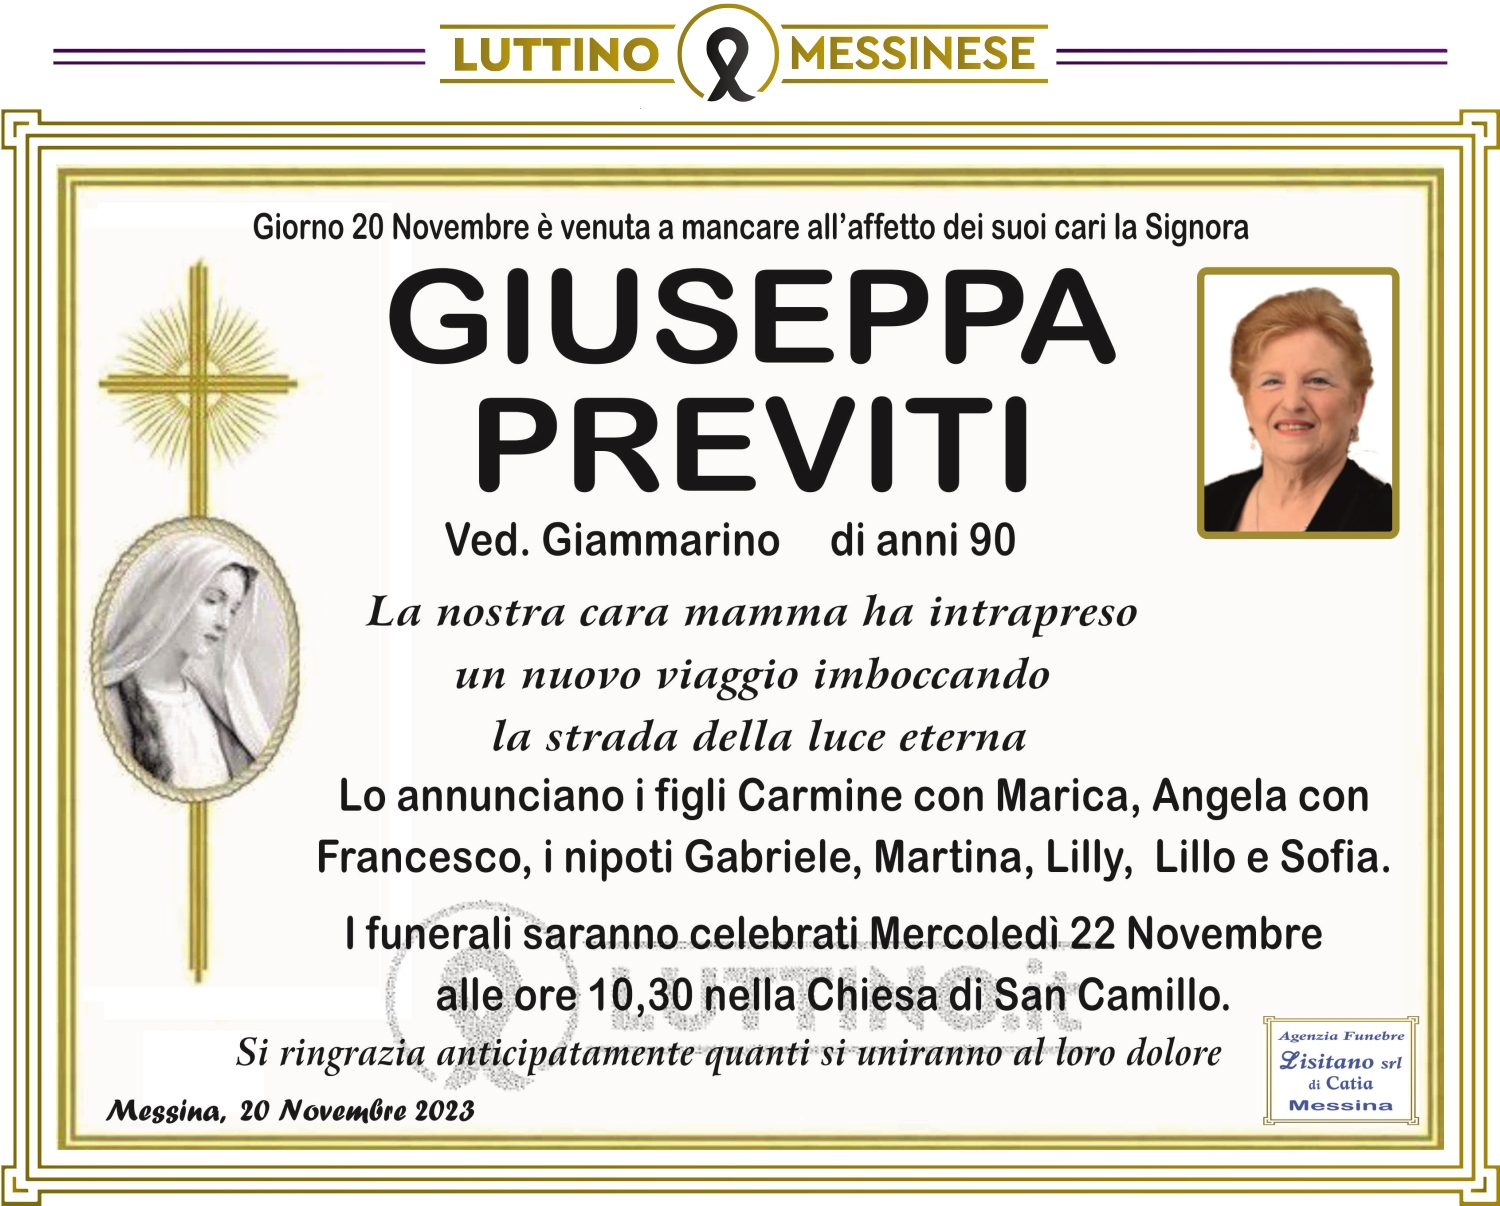 Giuseppa Previti